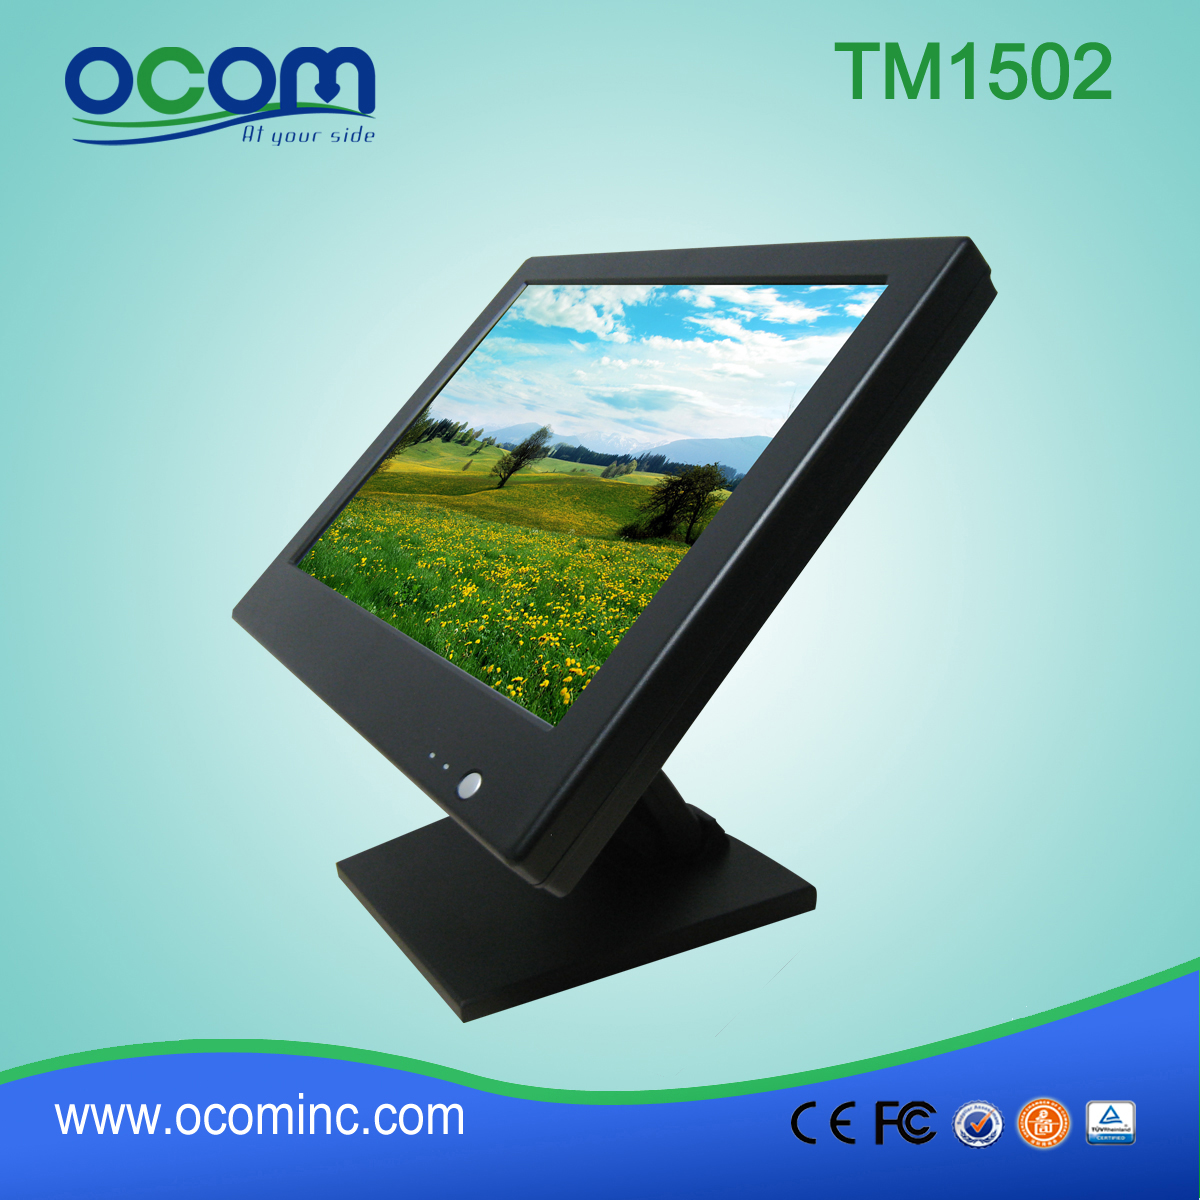 TM1502 超市桌面立式触摸屏显示器